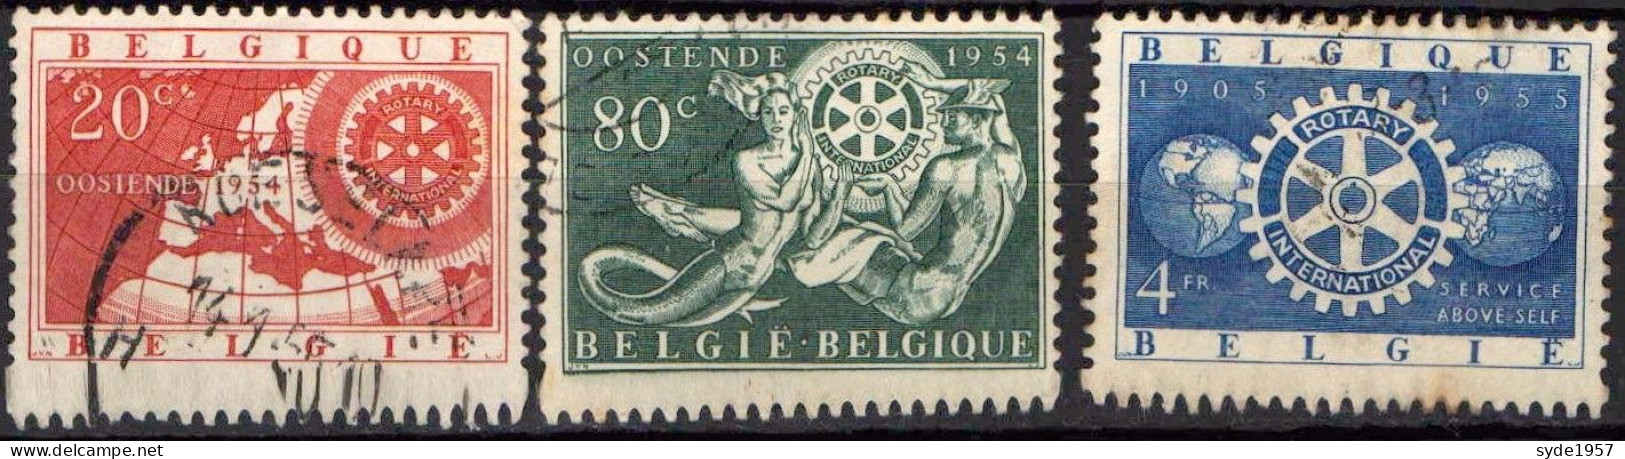 Belgique 1954 50ans Rotary International COB952 à 954 (complet)- Oblitérés - Used Stamps